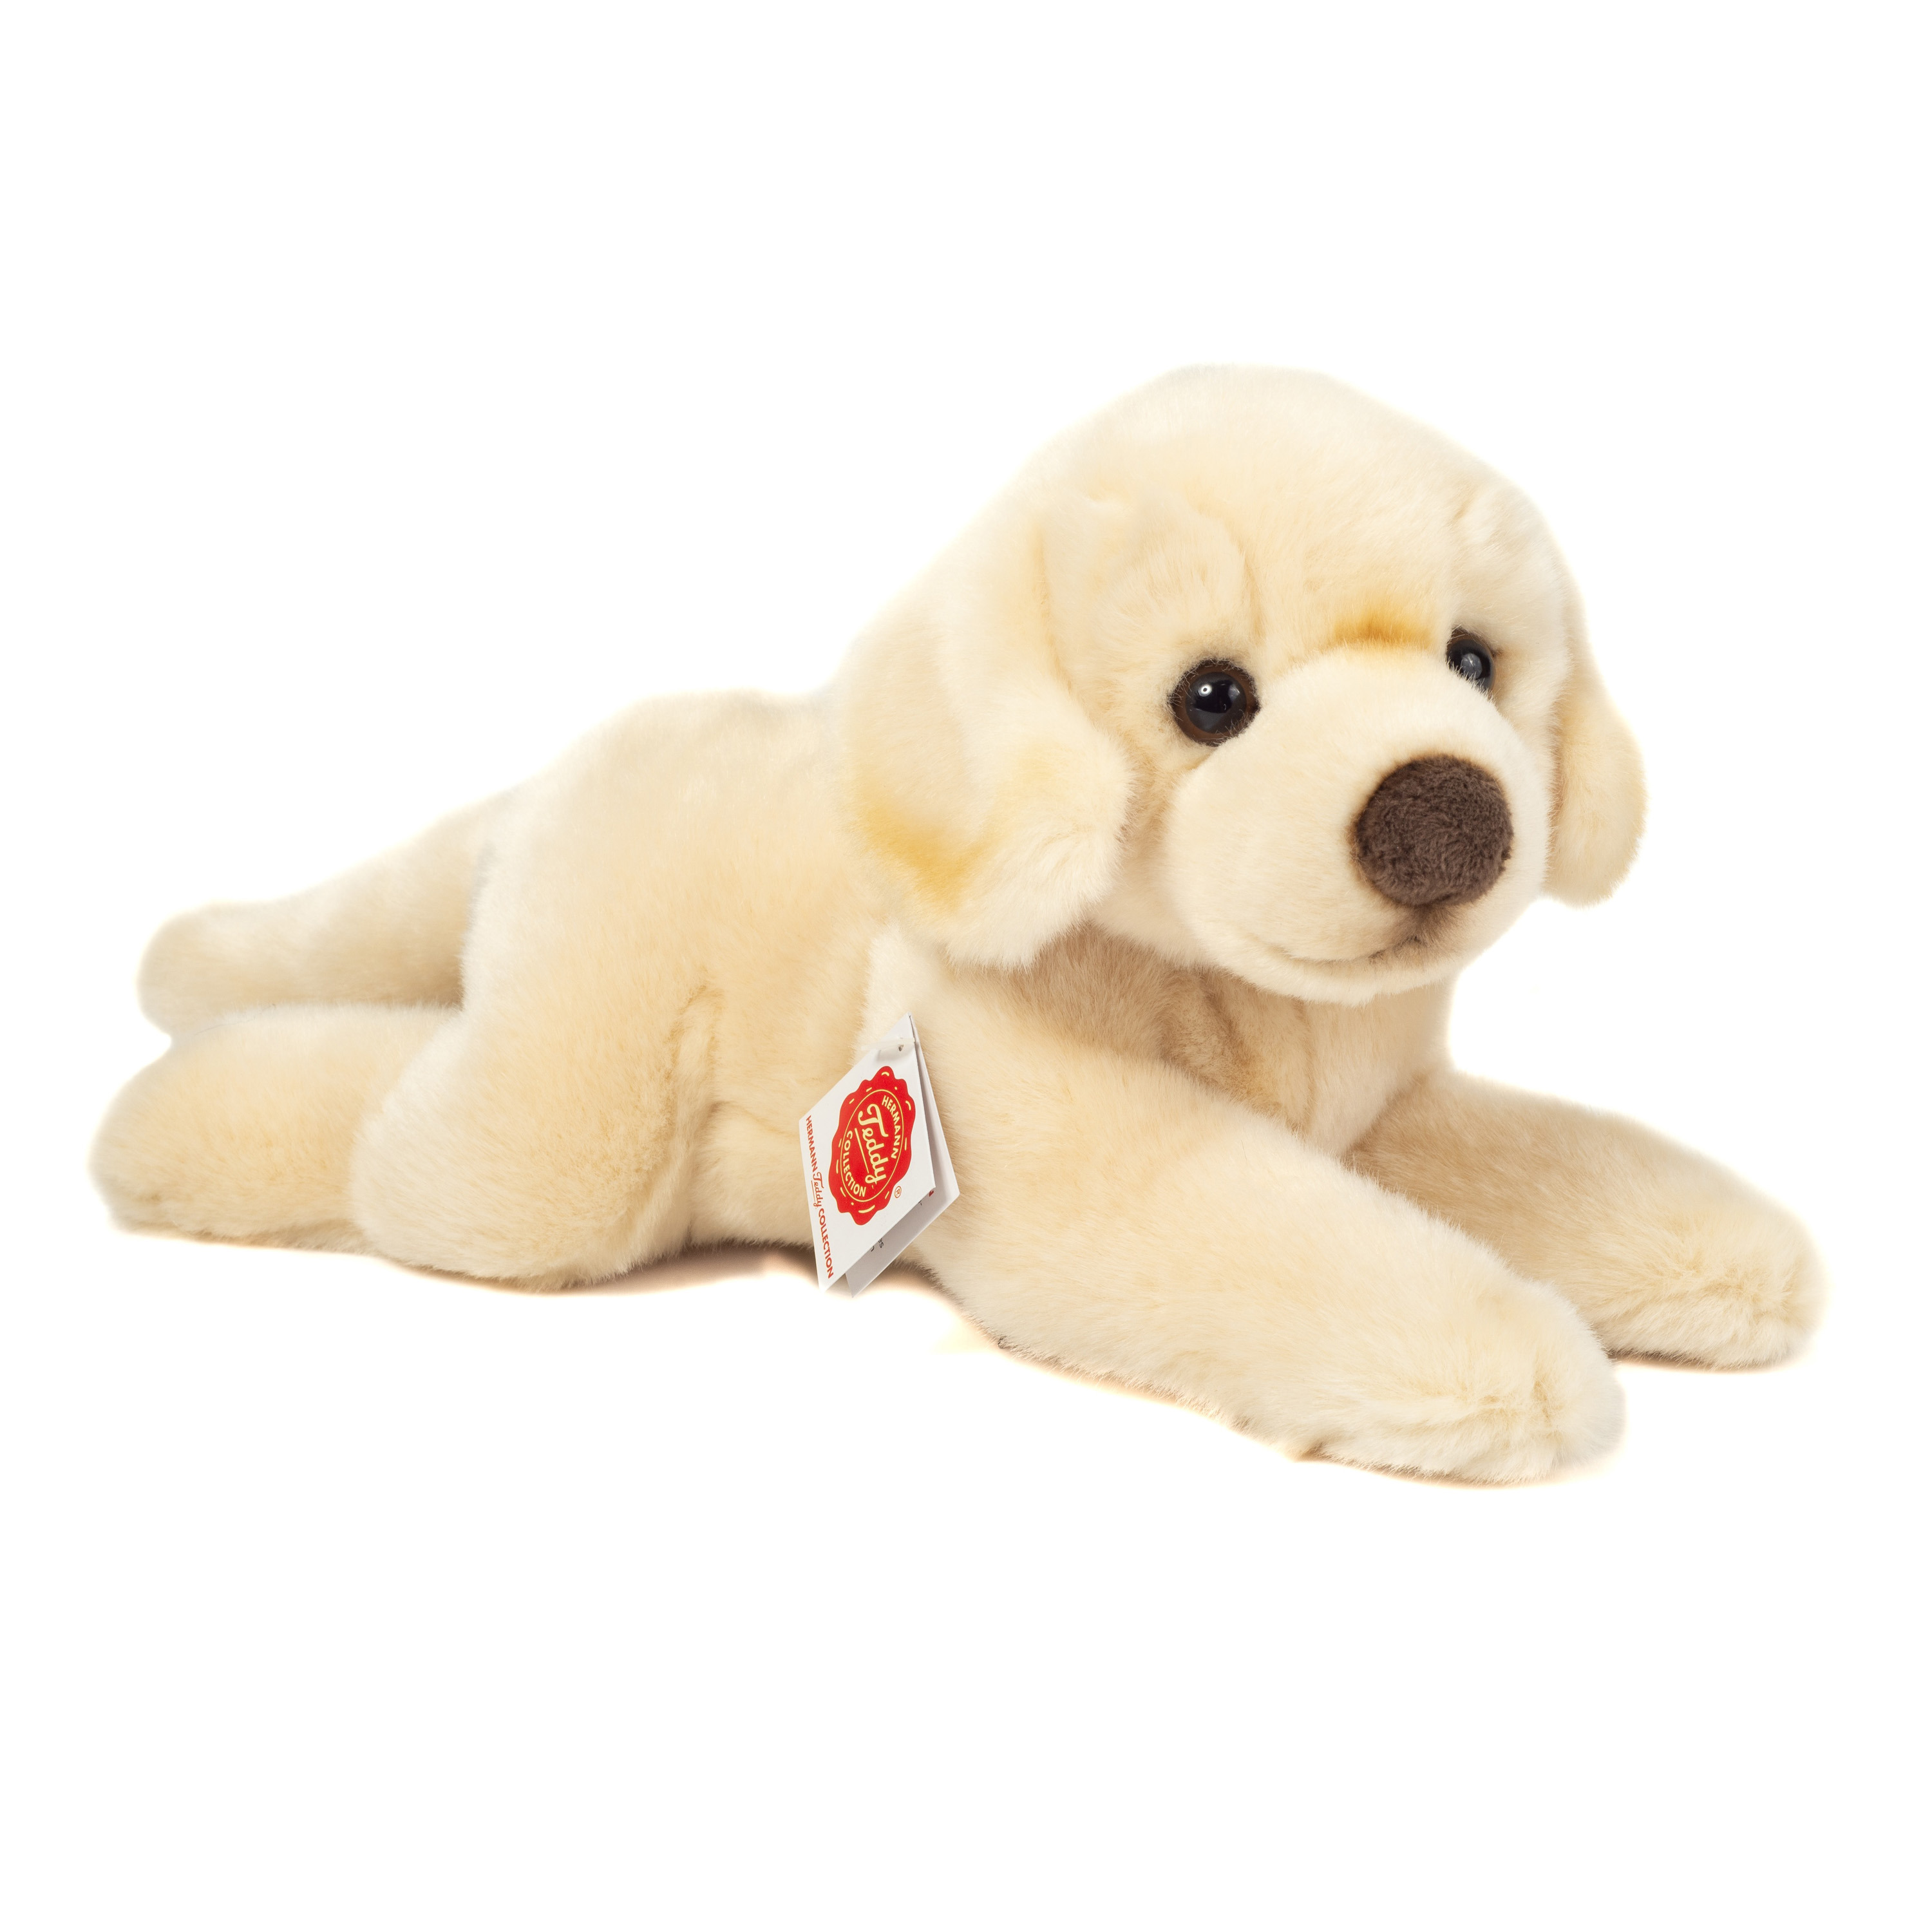 Knuffeldier hond Labrador zachte pluche stof premium kwaliteit knuffels creme wit 33 cm